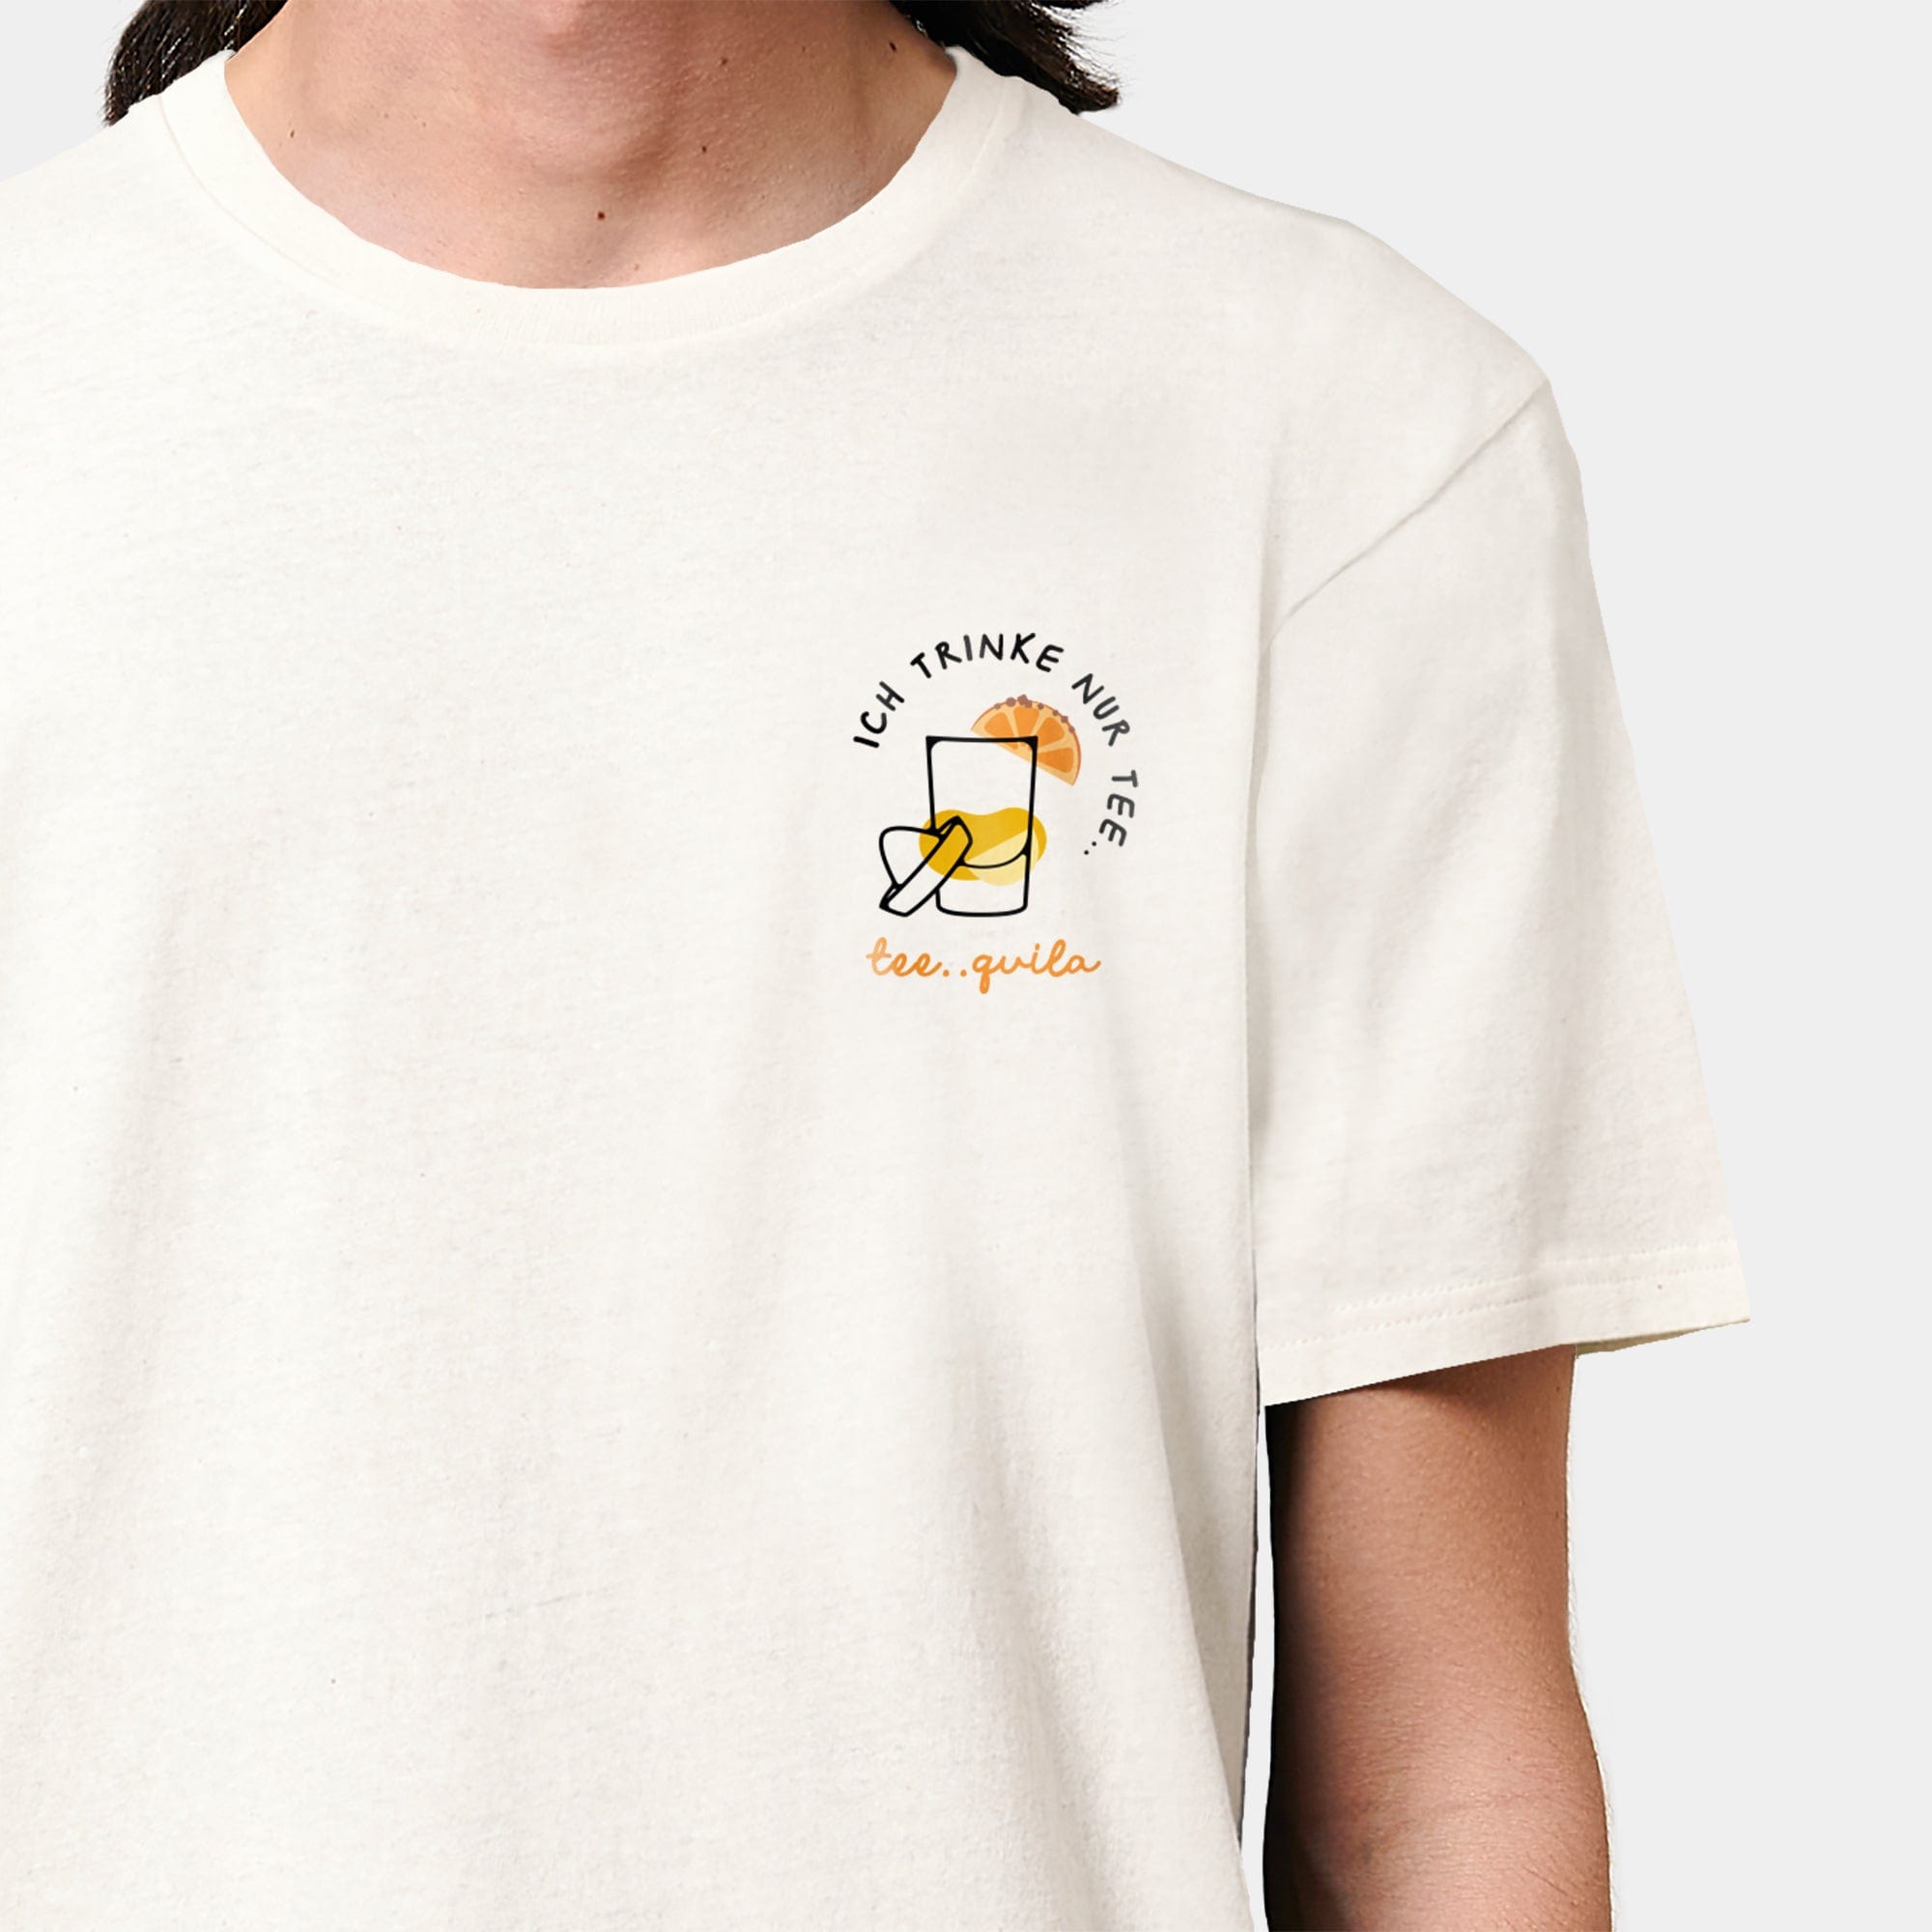 HEITER & LÄSSIG T-Shirt "ich trinke nur tee.. quila" S / RE-weiß - aus nachhaltiger und fairer Produktion